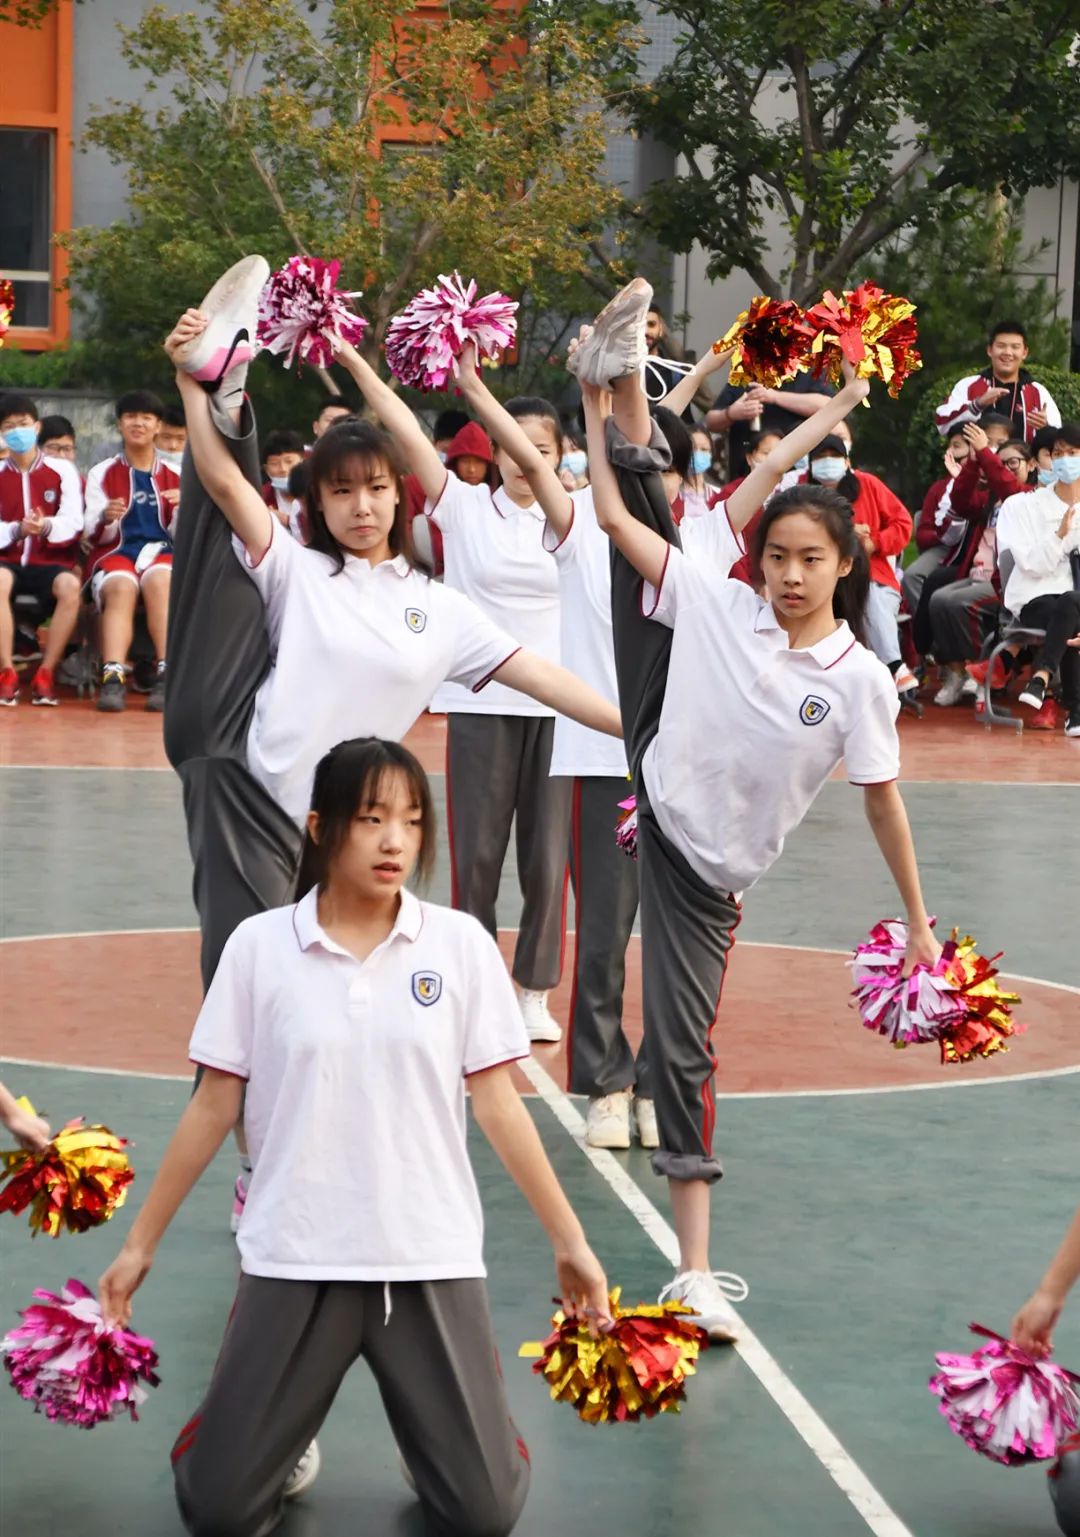 北外国际高中校园运动会 l “我运动、我快乐、我健康”——隆重举行